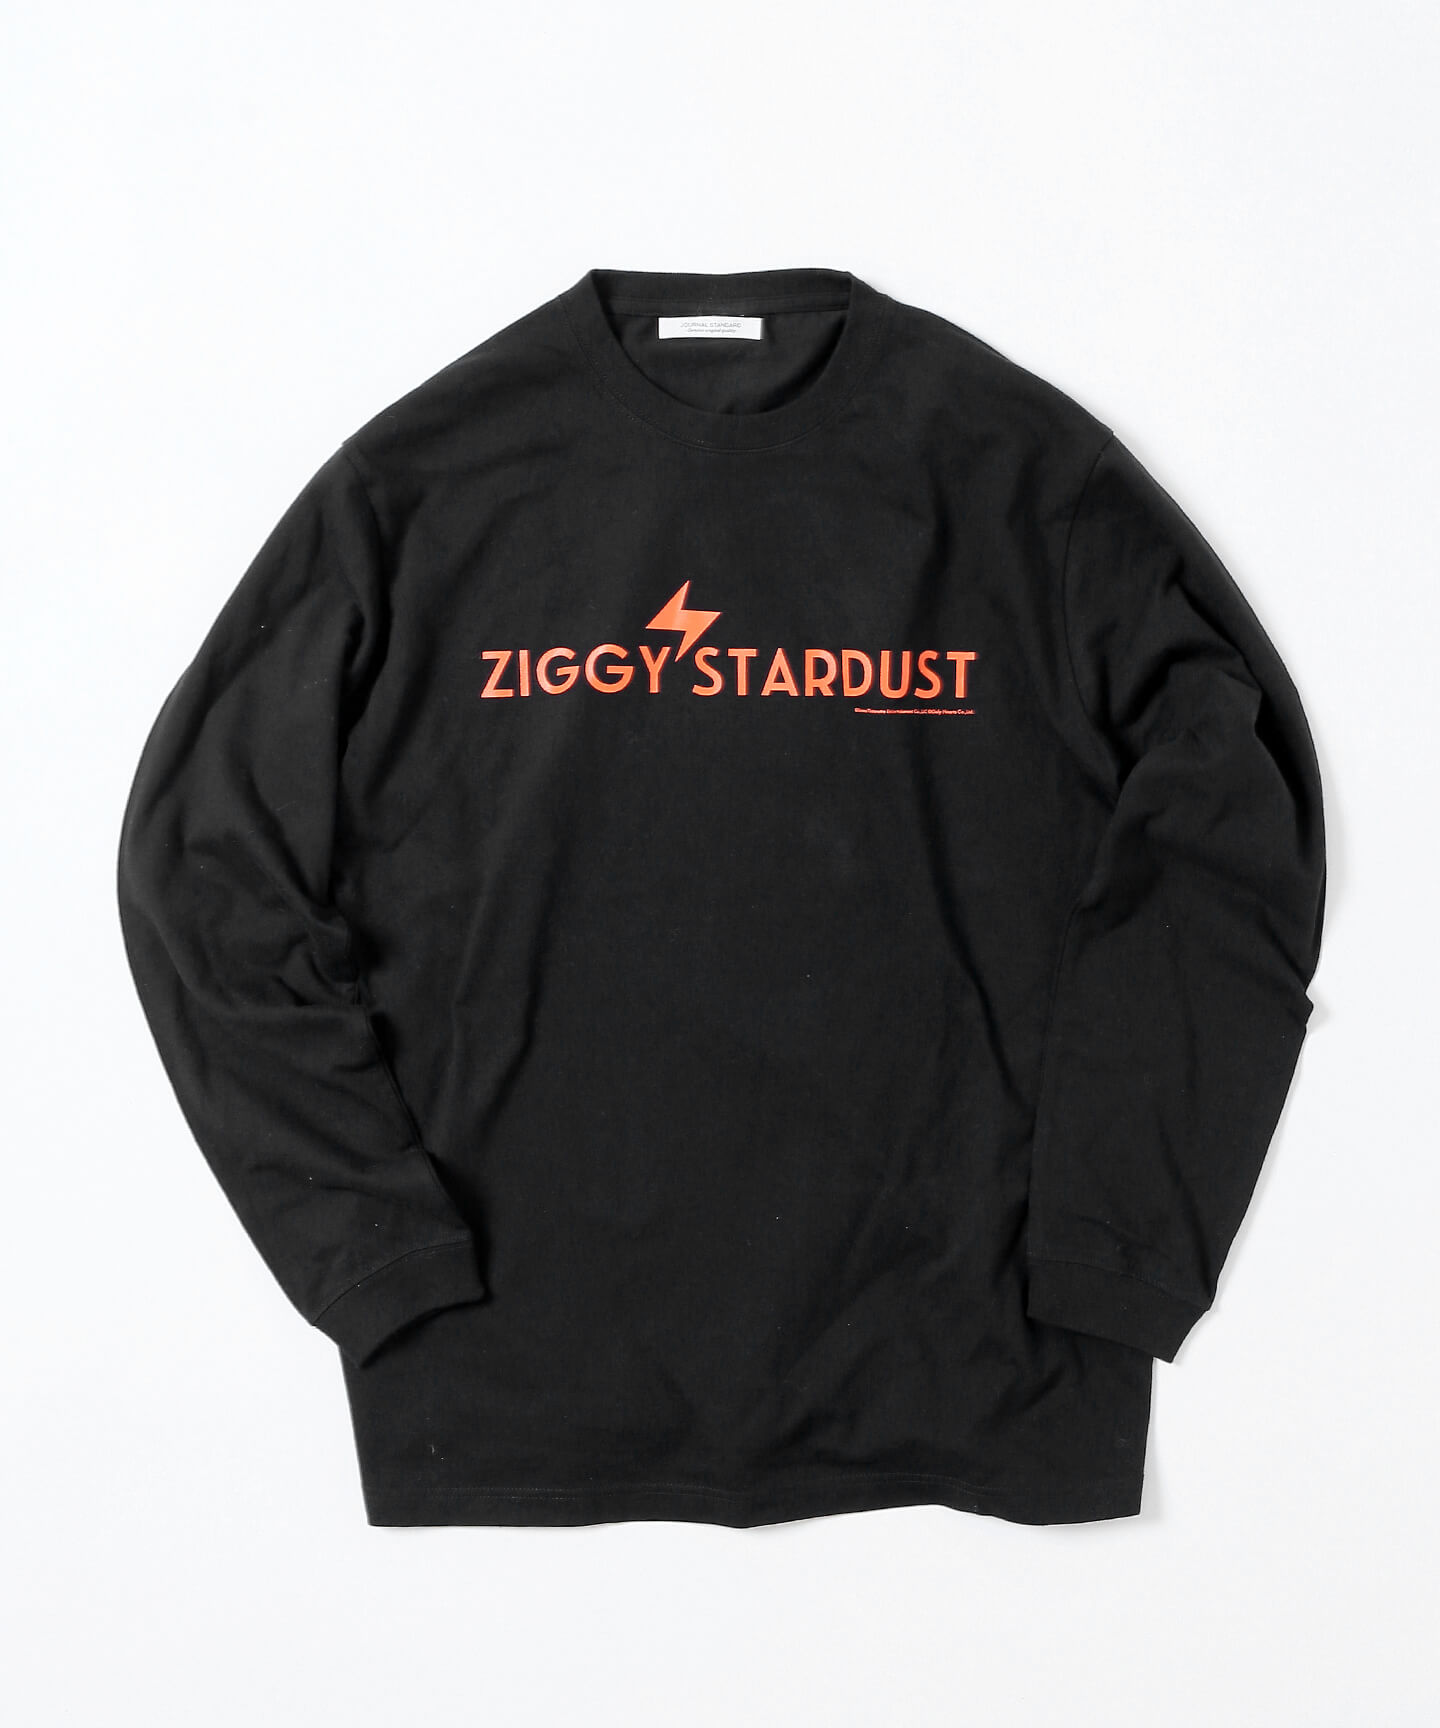 ZIGGY STARDUST L/S T-shirt 6,600円 / サイズ M, L, XL